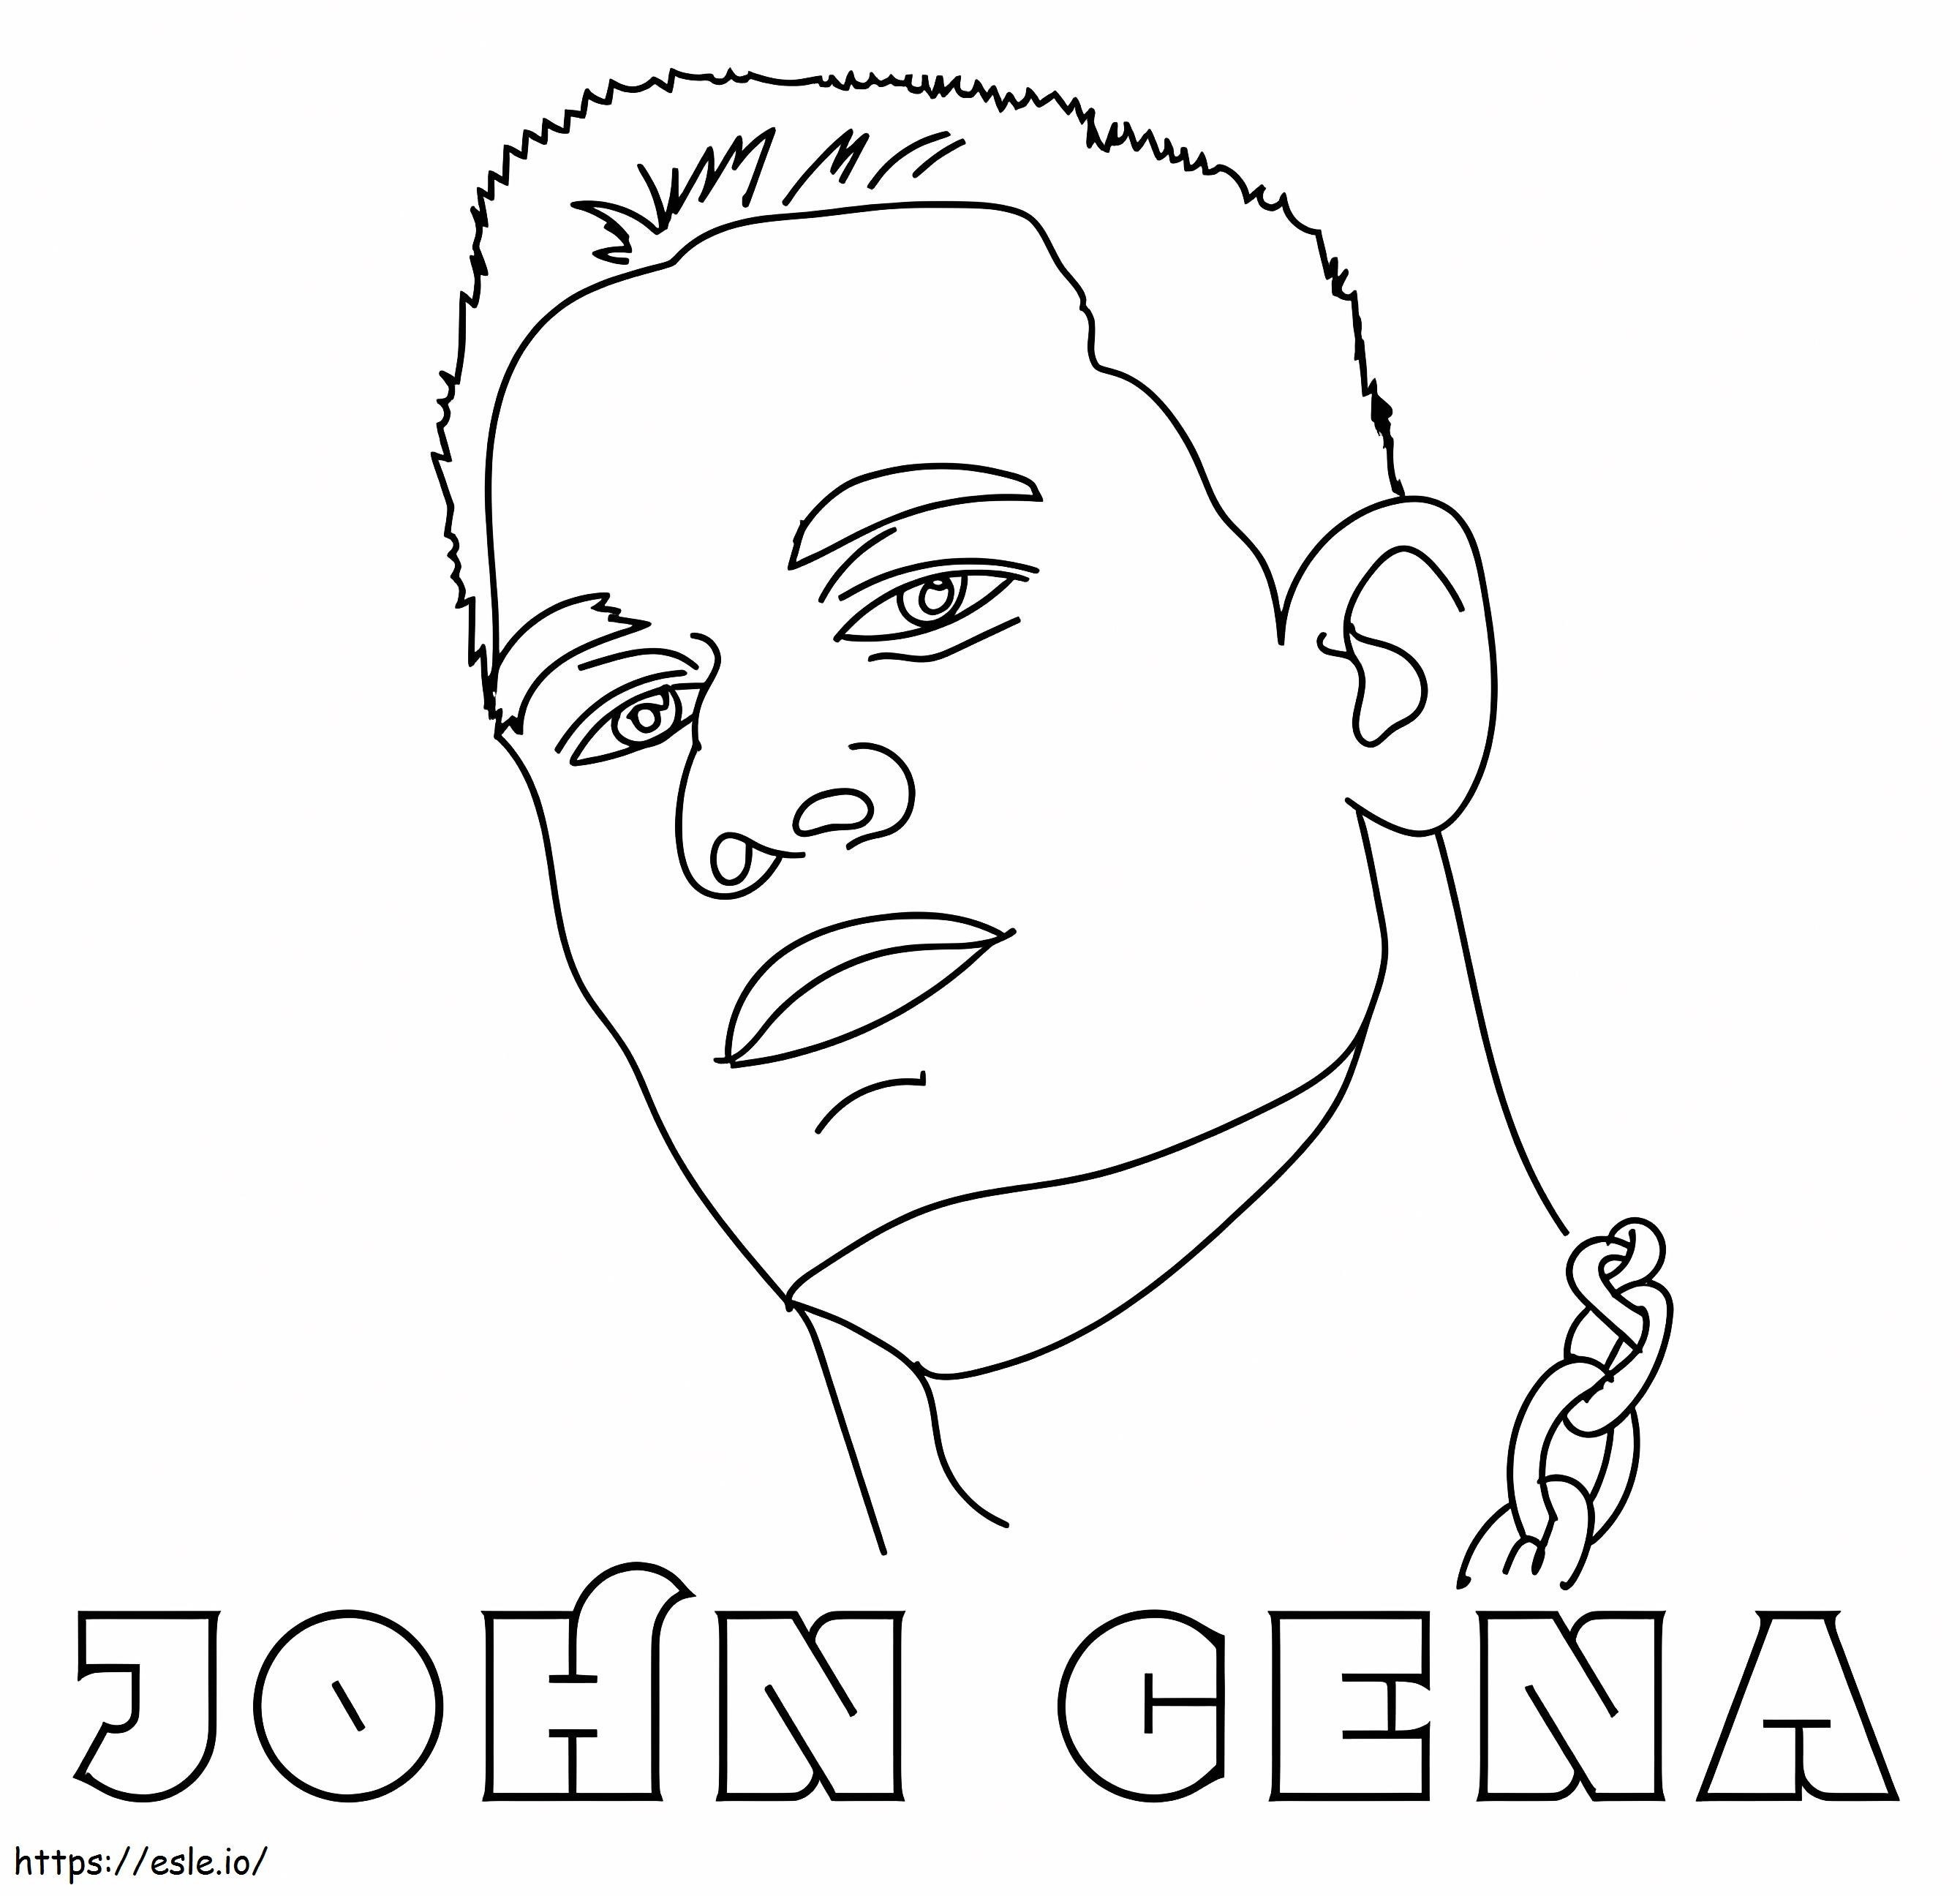 John Cenas arc kifestő